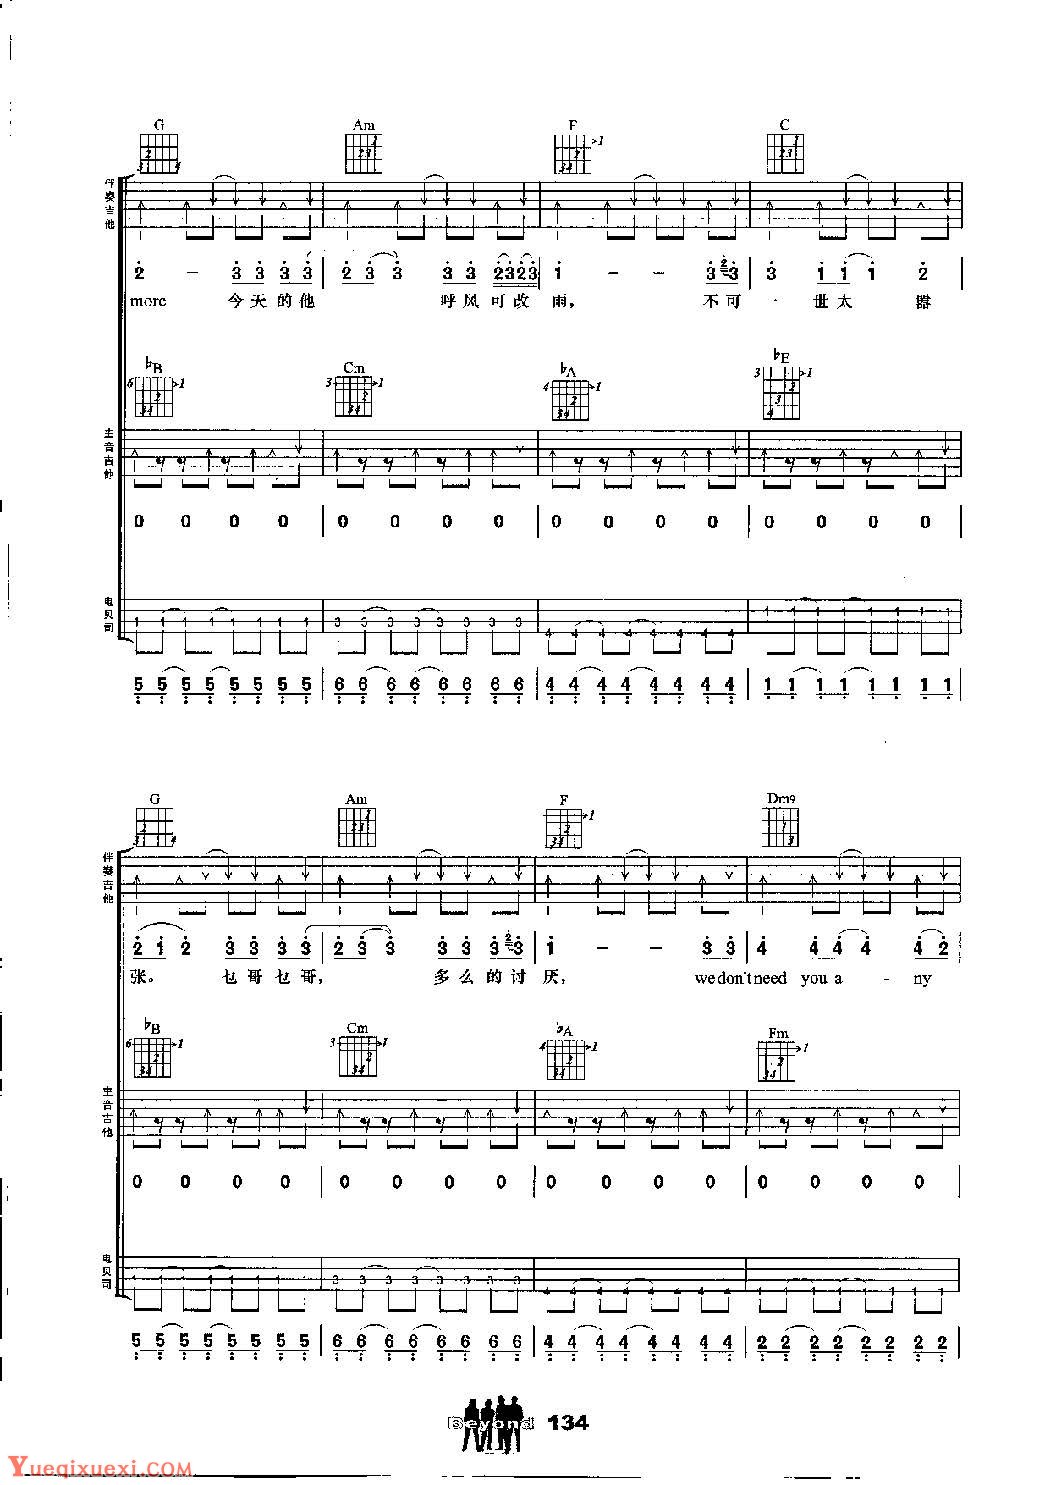 BEYOND乐队吉他组合弹唱乐曲《不可一世》黄家驹词曲-歌手吉他谱集 - 乐器学习网